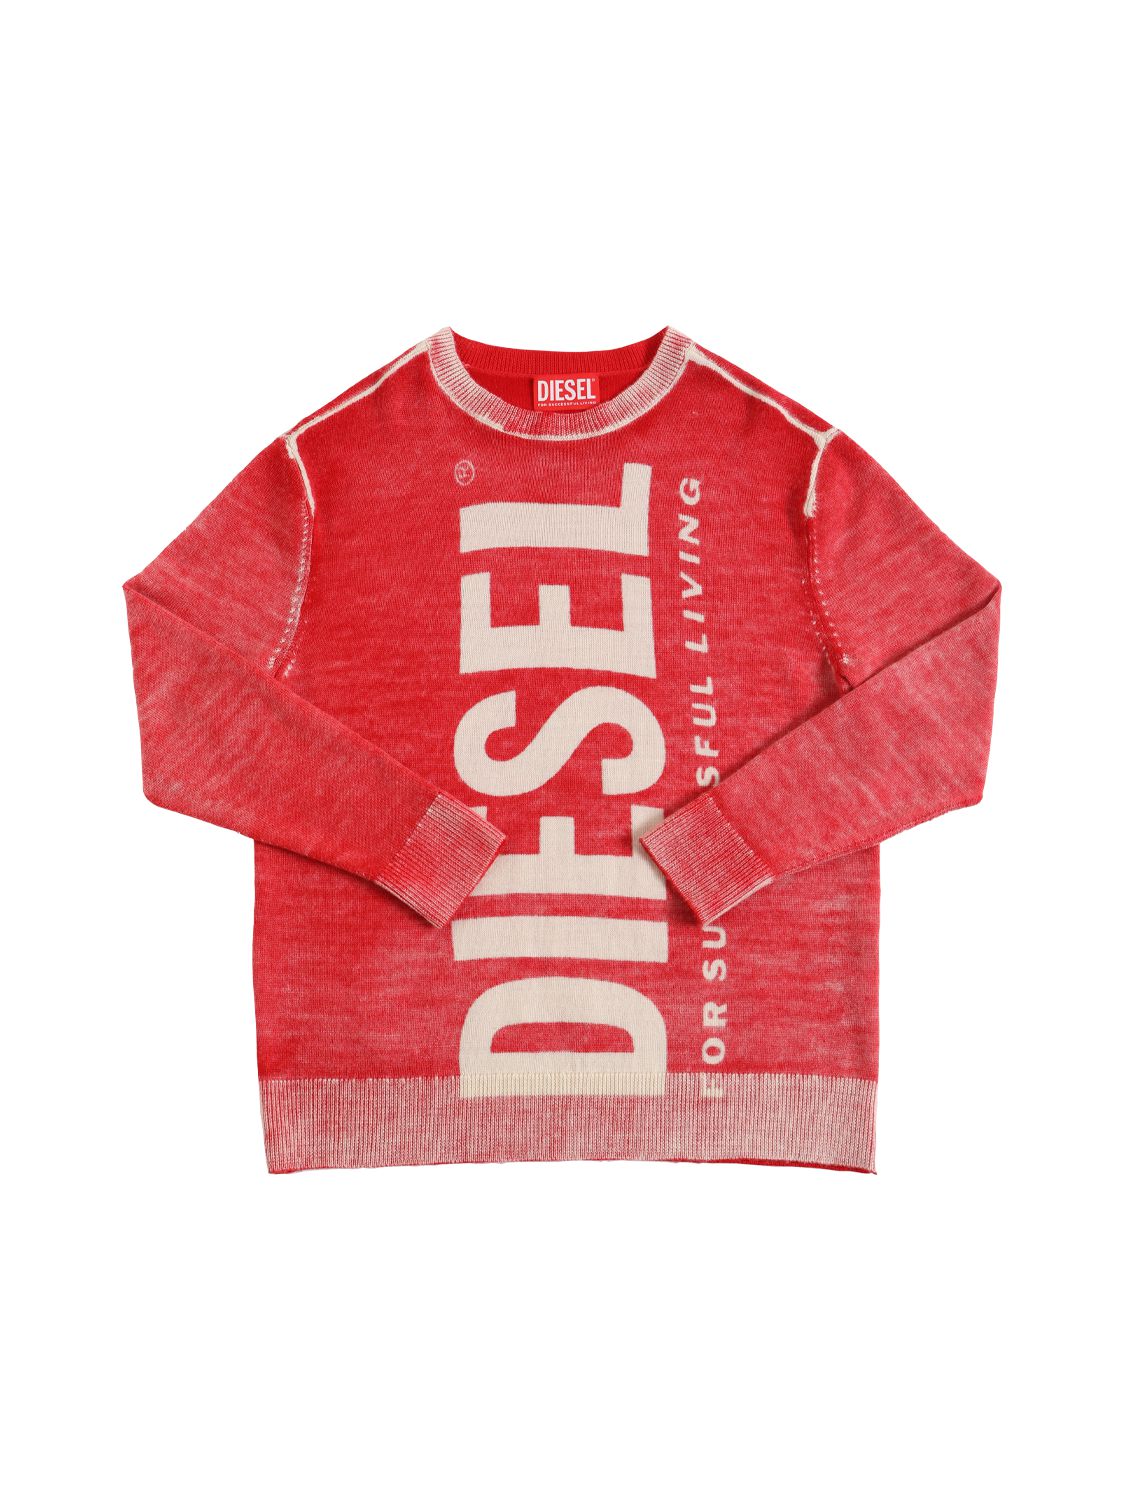 Diesel Kids' Washed Wool Knit Sweater W/logo In Red